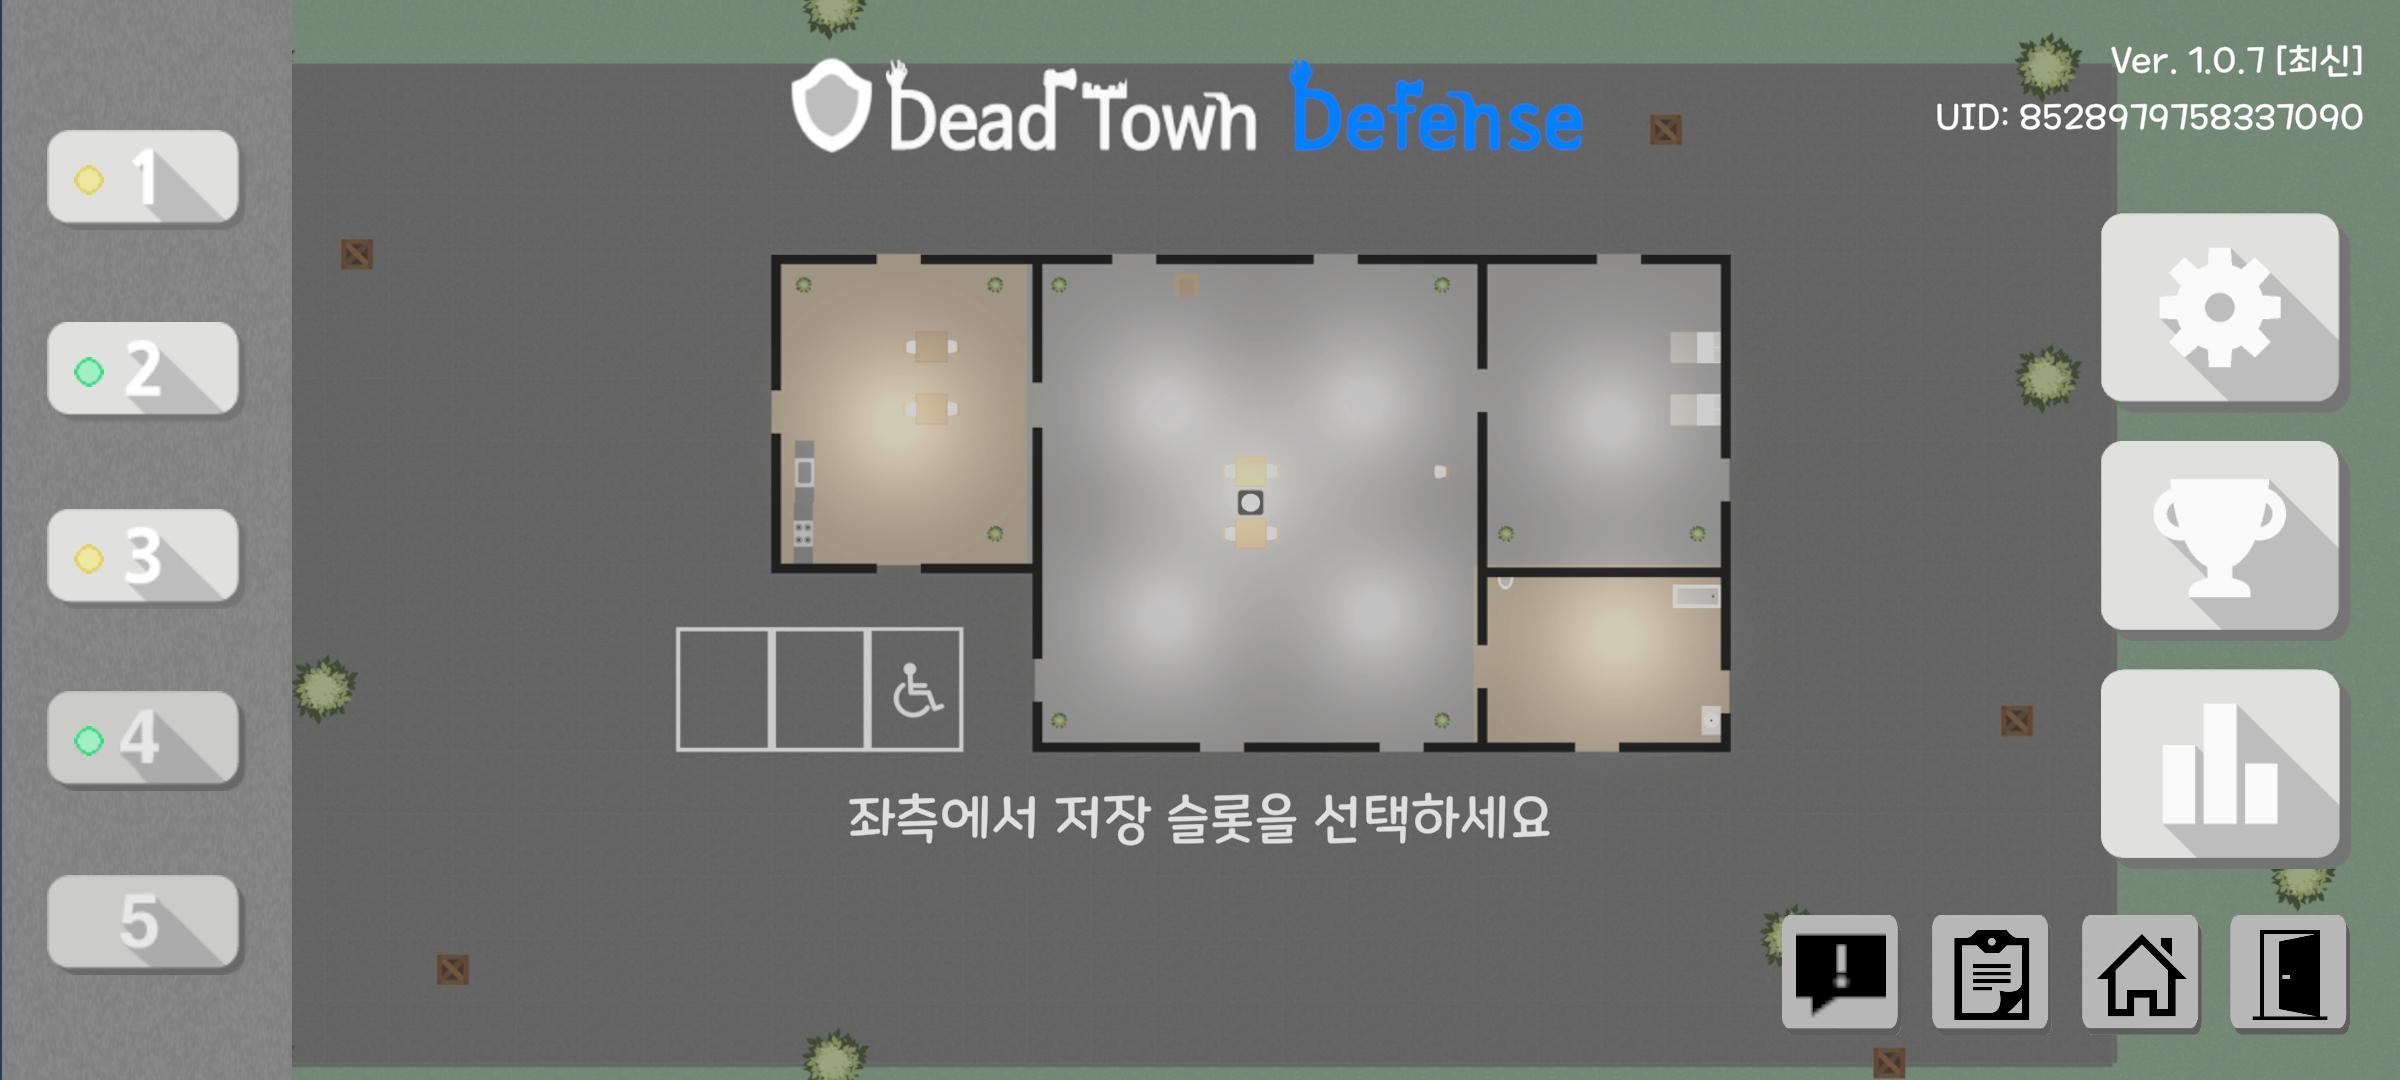 데드 타운 디펜스 [Dead Town Defense] screenshot game